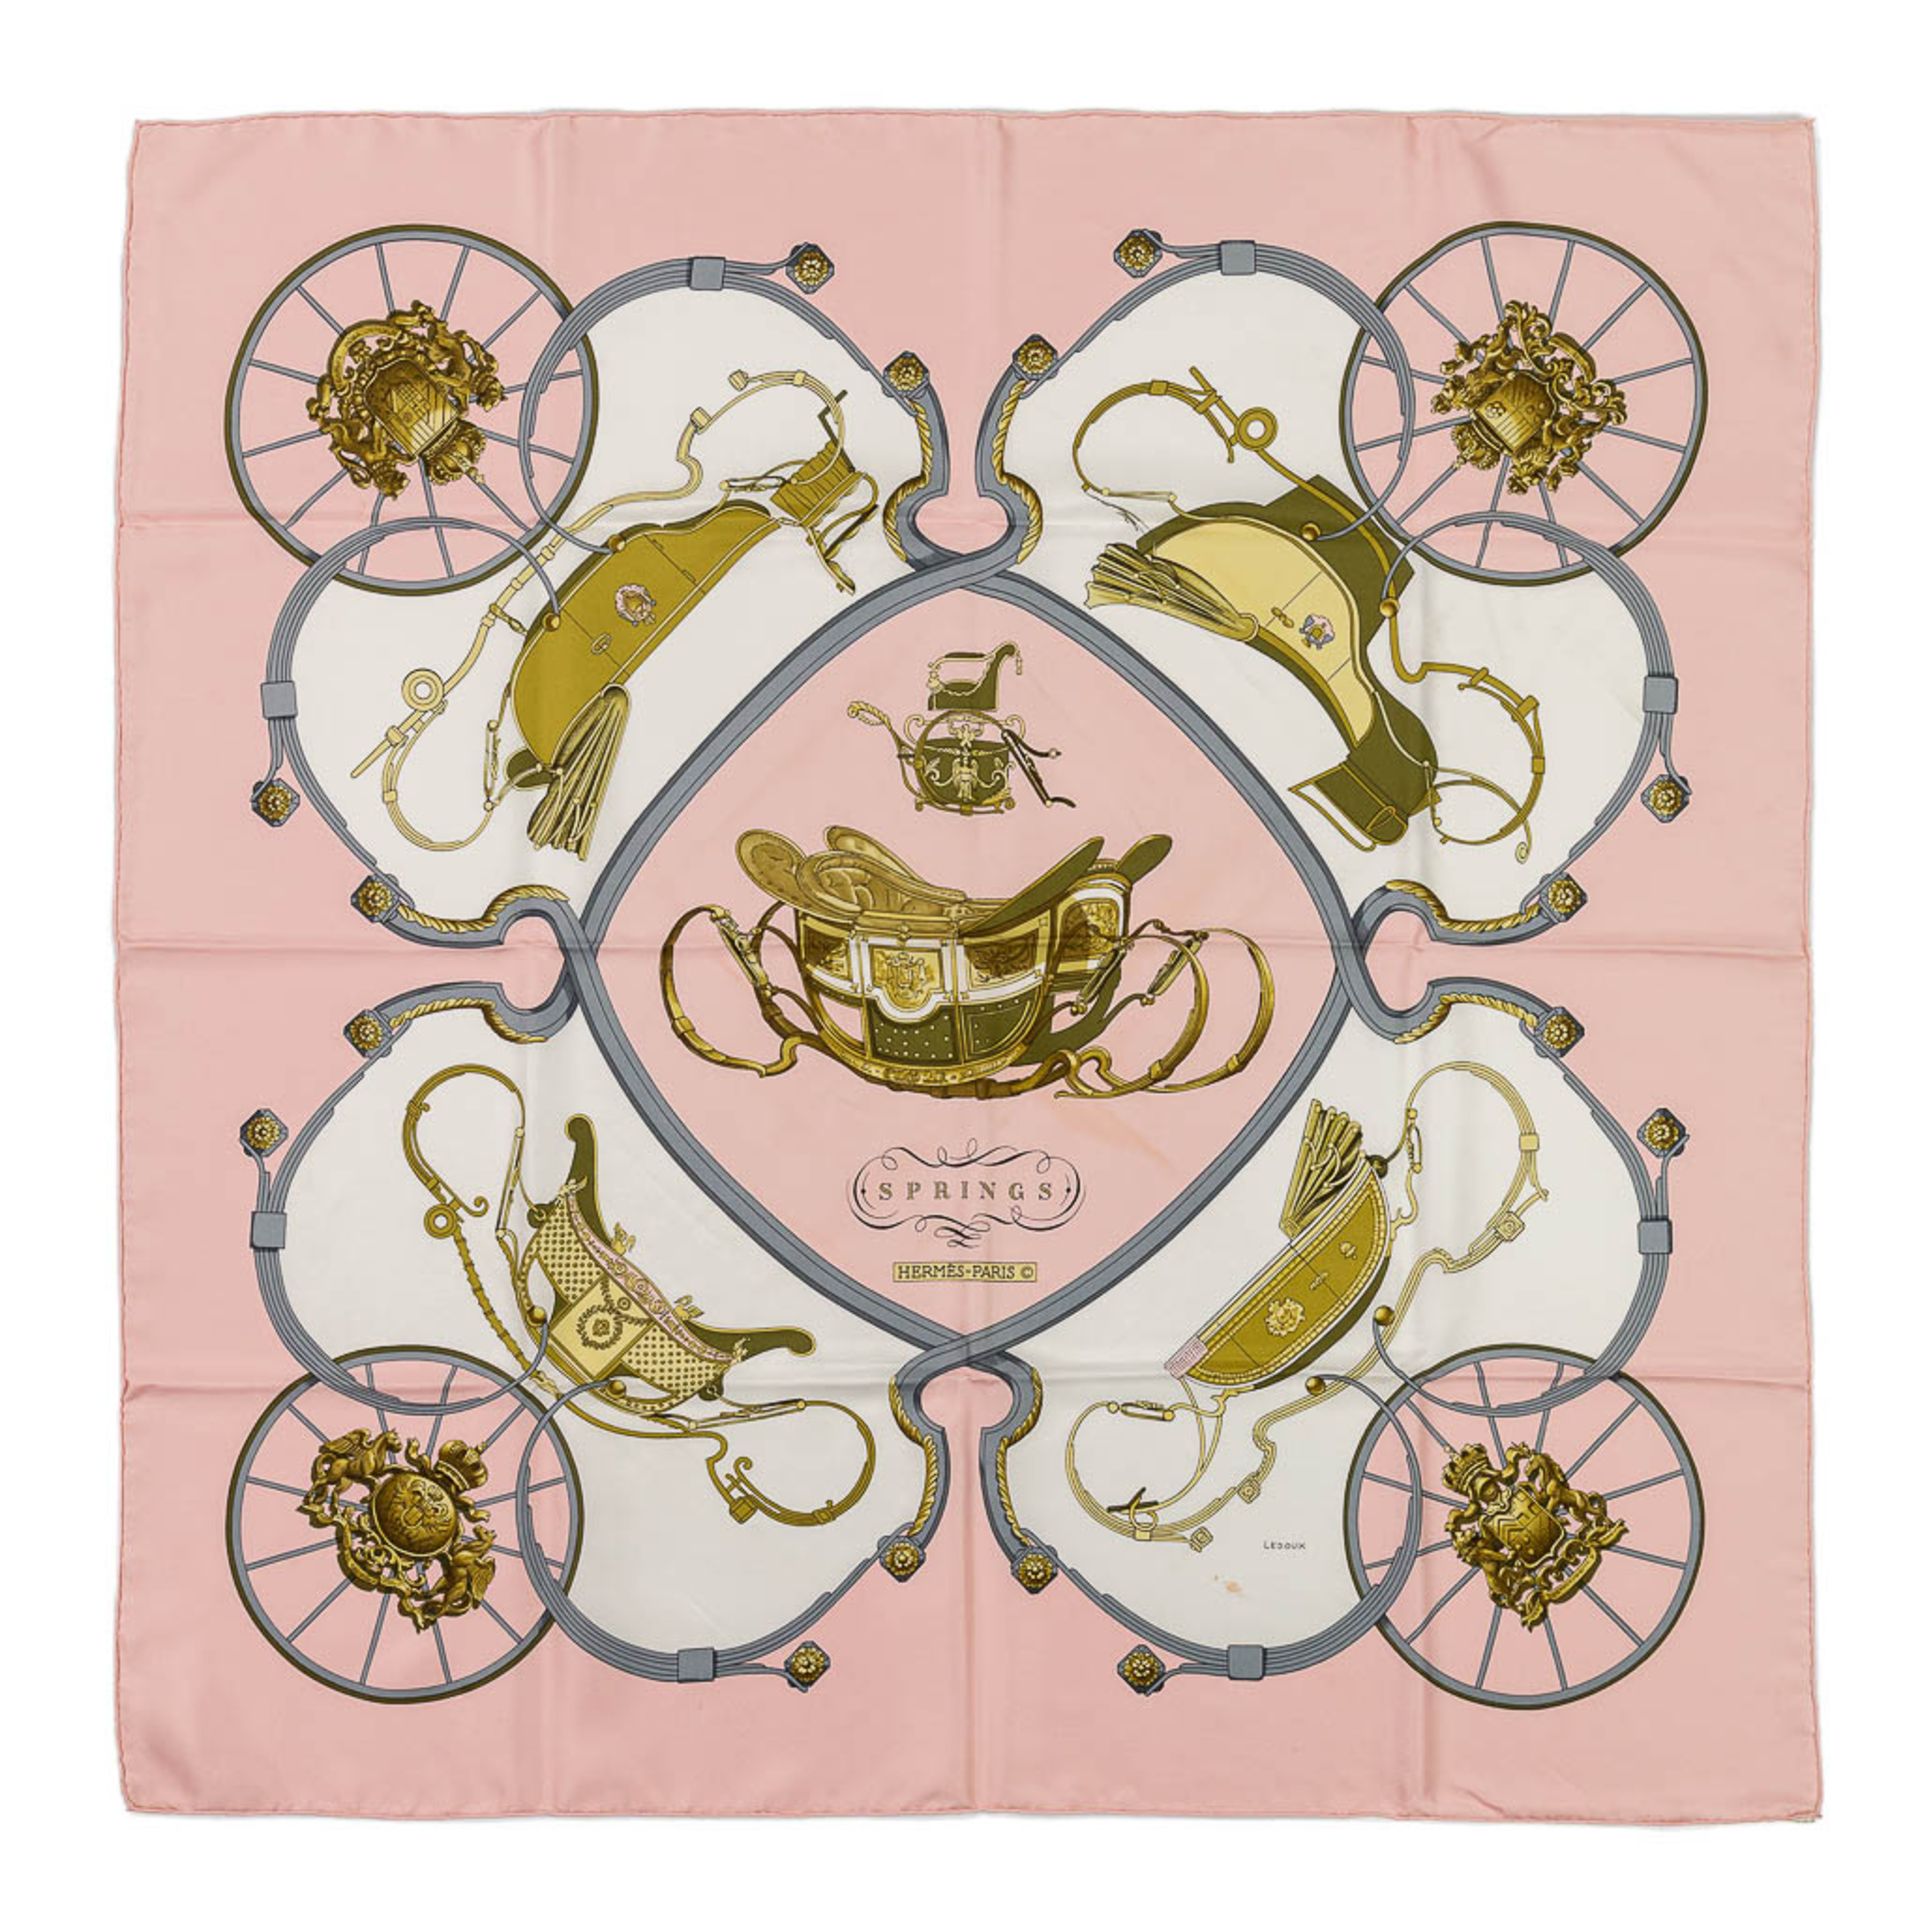 Hermès Paris, a silk scarf, 'Spring'. (L: 88 x W: 88 cm)